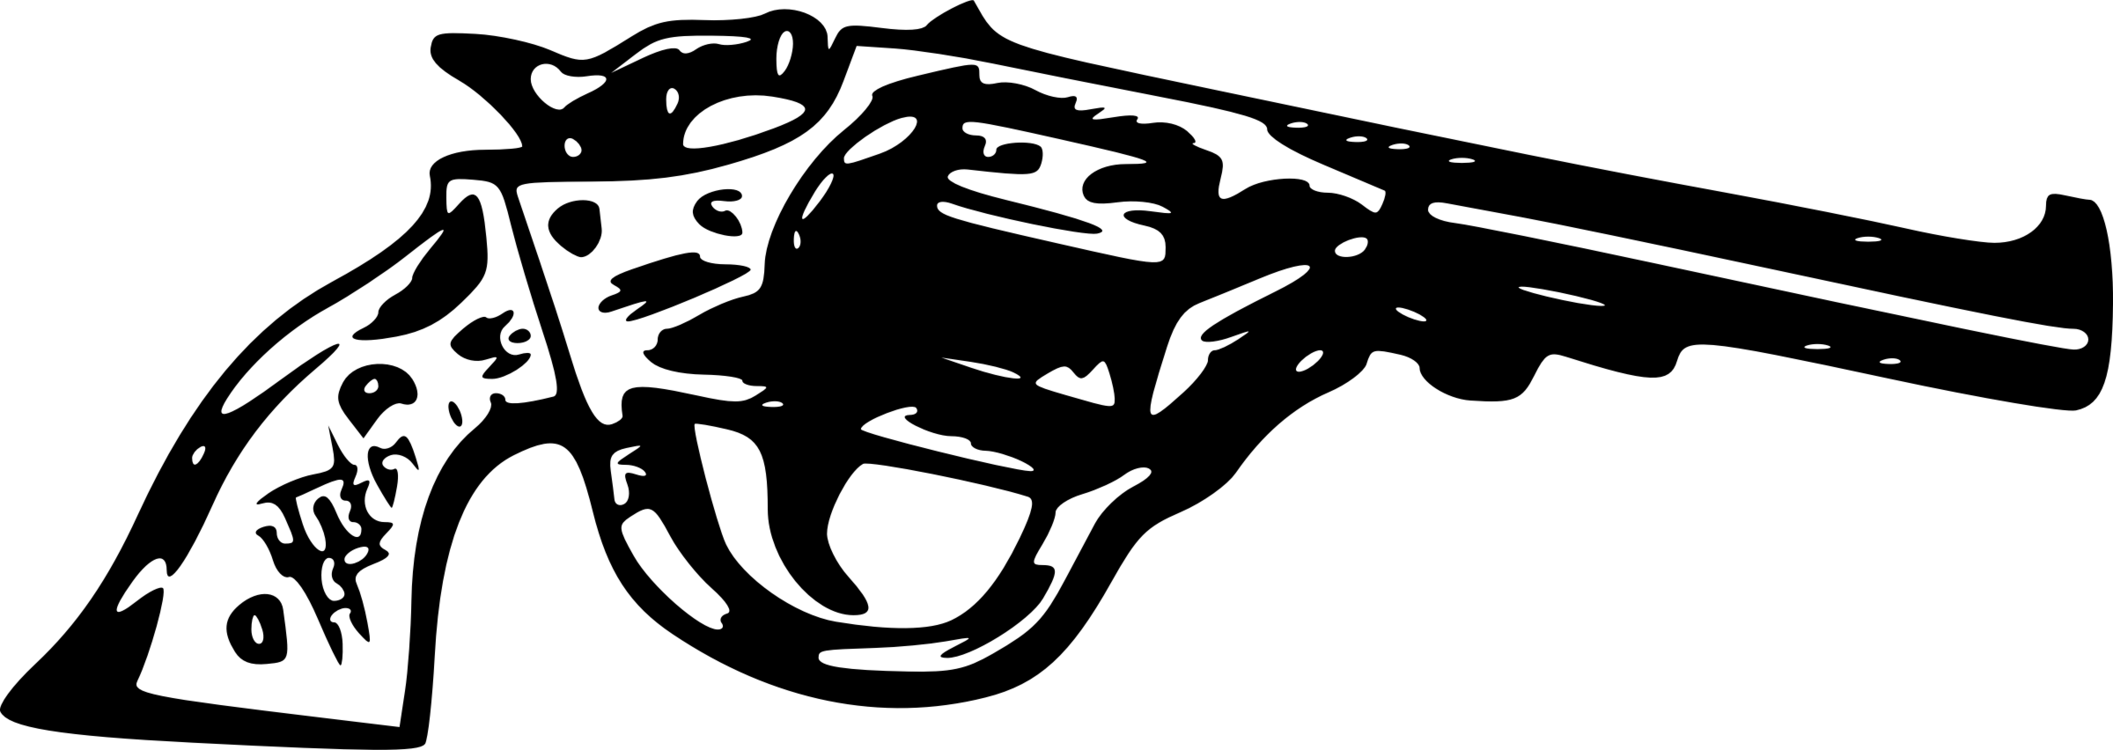 Crime Logo - Violence Weapon Violent crime Logo Pistol CC0 - Art,Fictional ...